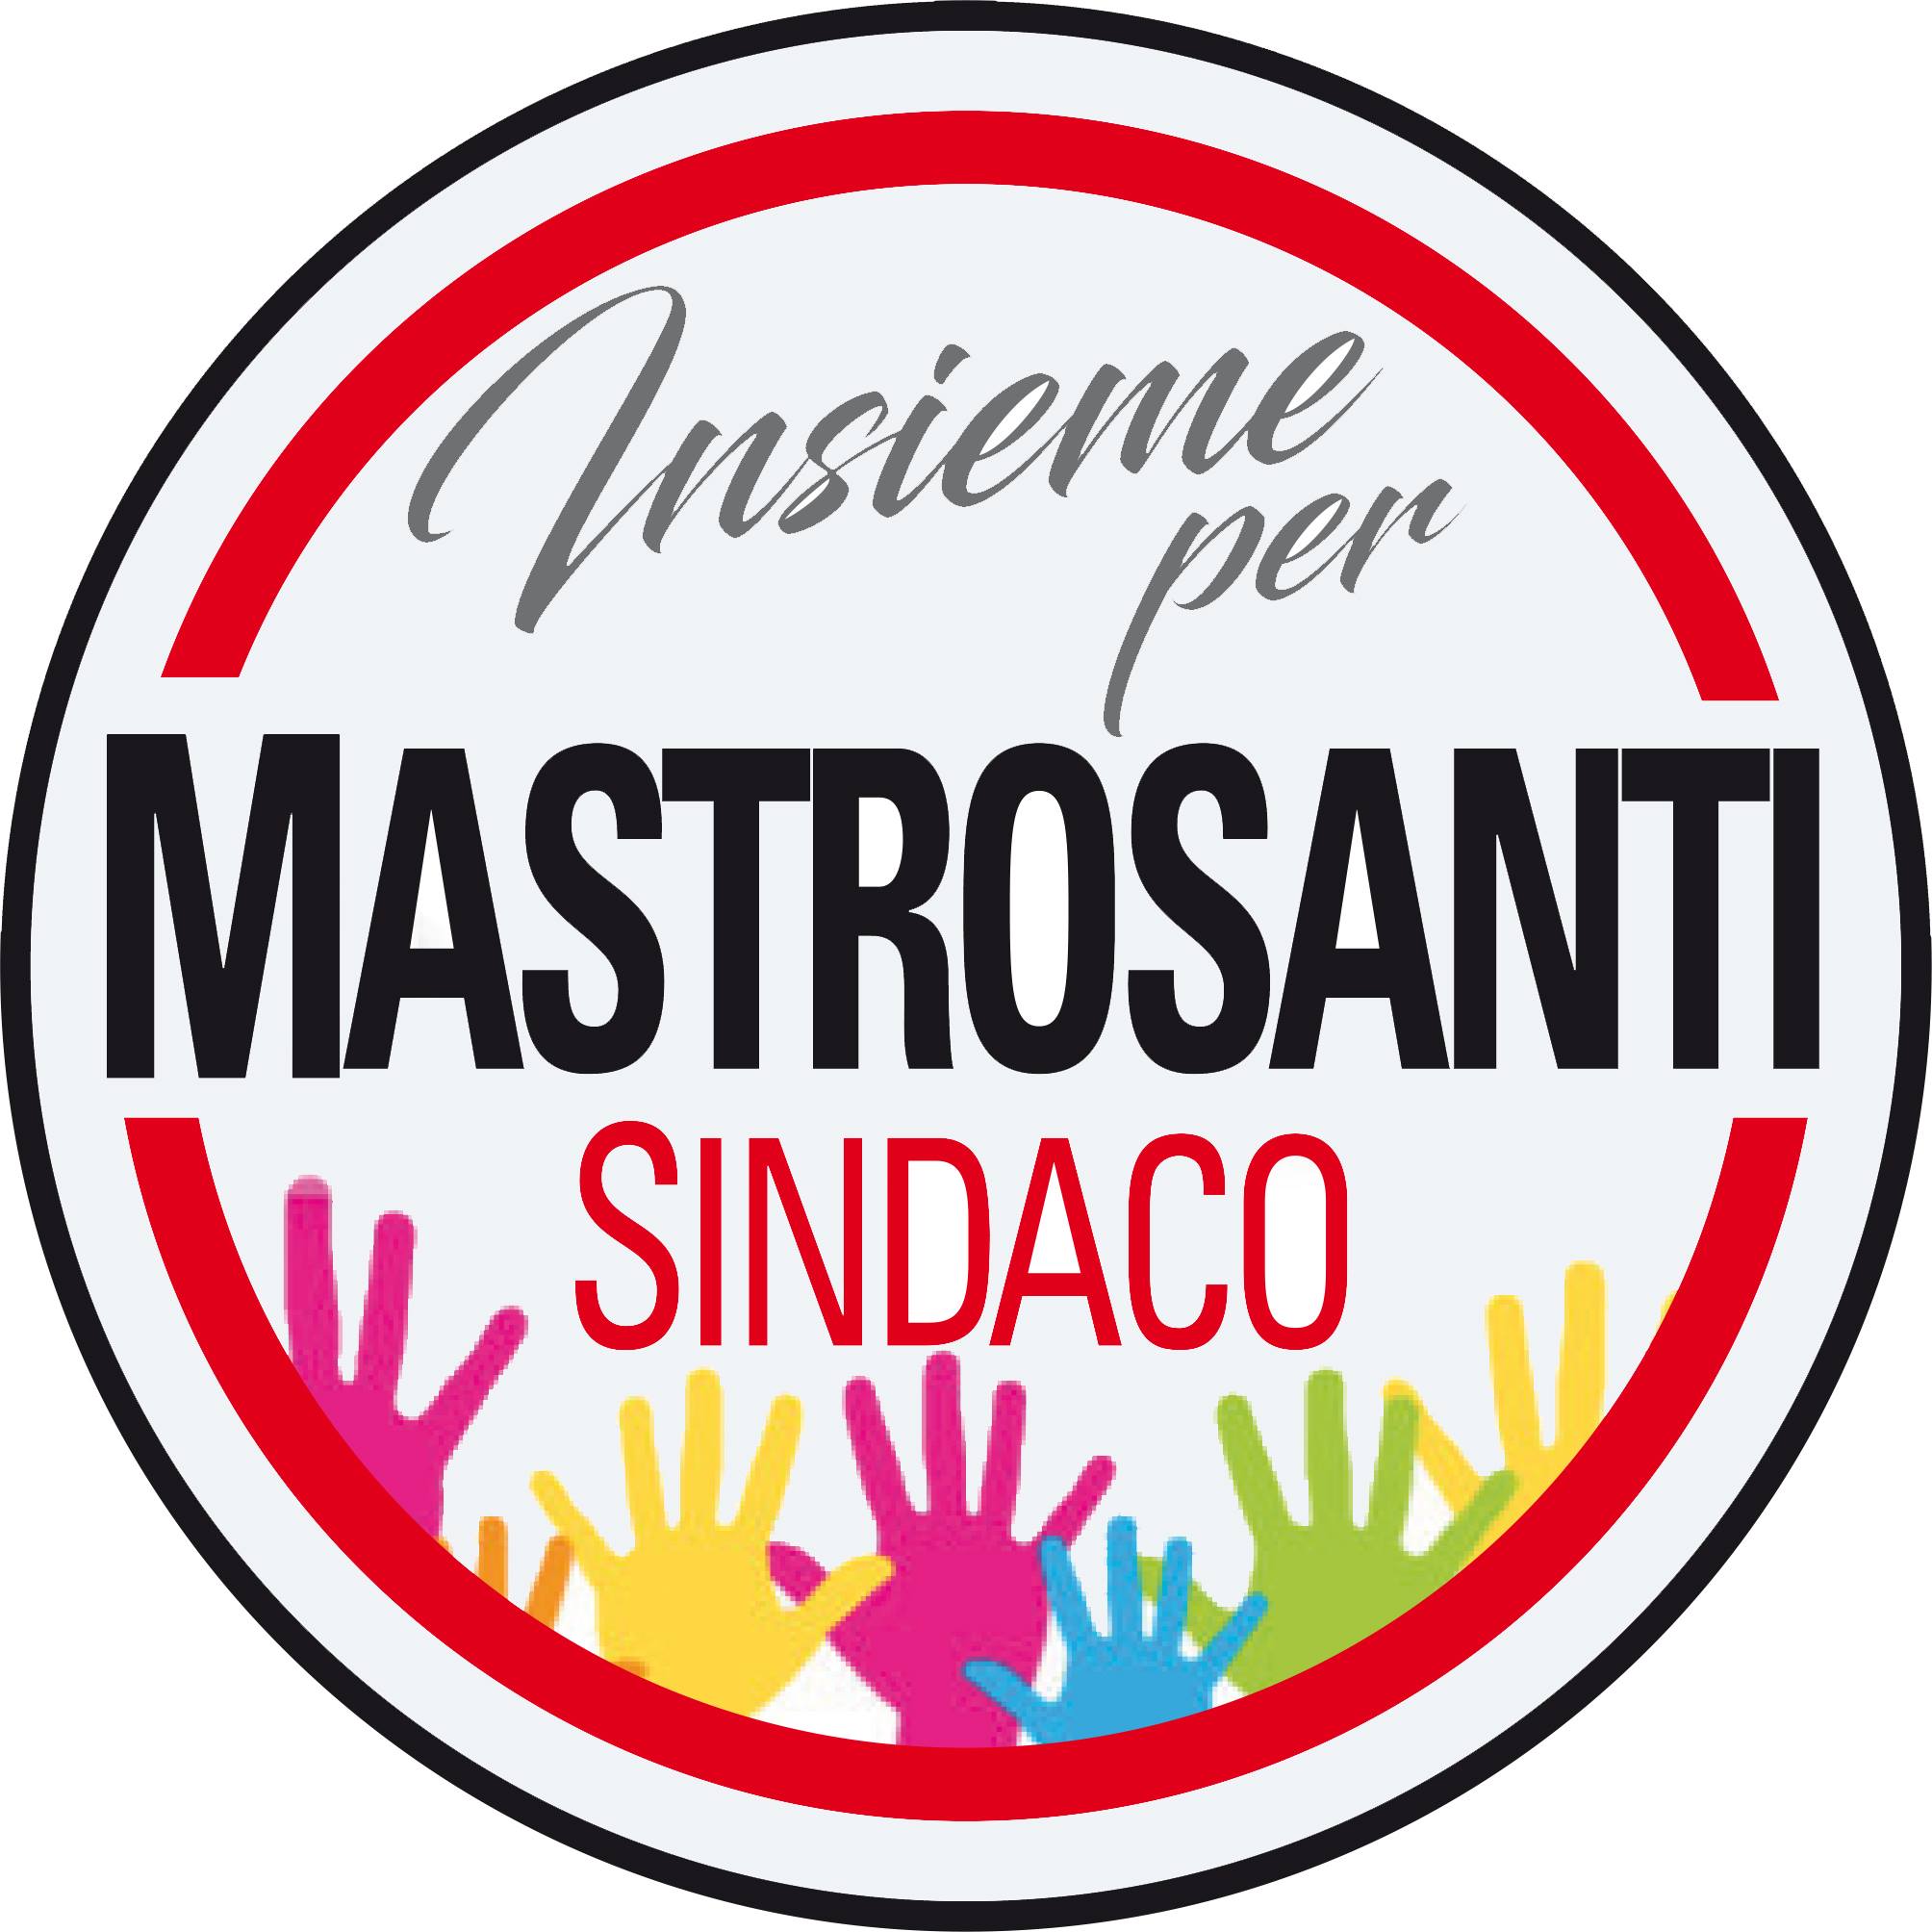 Frascati(Insieme per Mastrosanti): avviati i lavori di adeguamento plesso scolastico Nazario Sauro